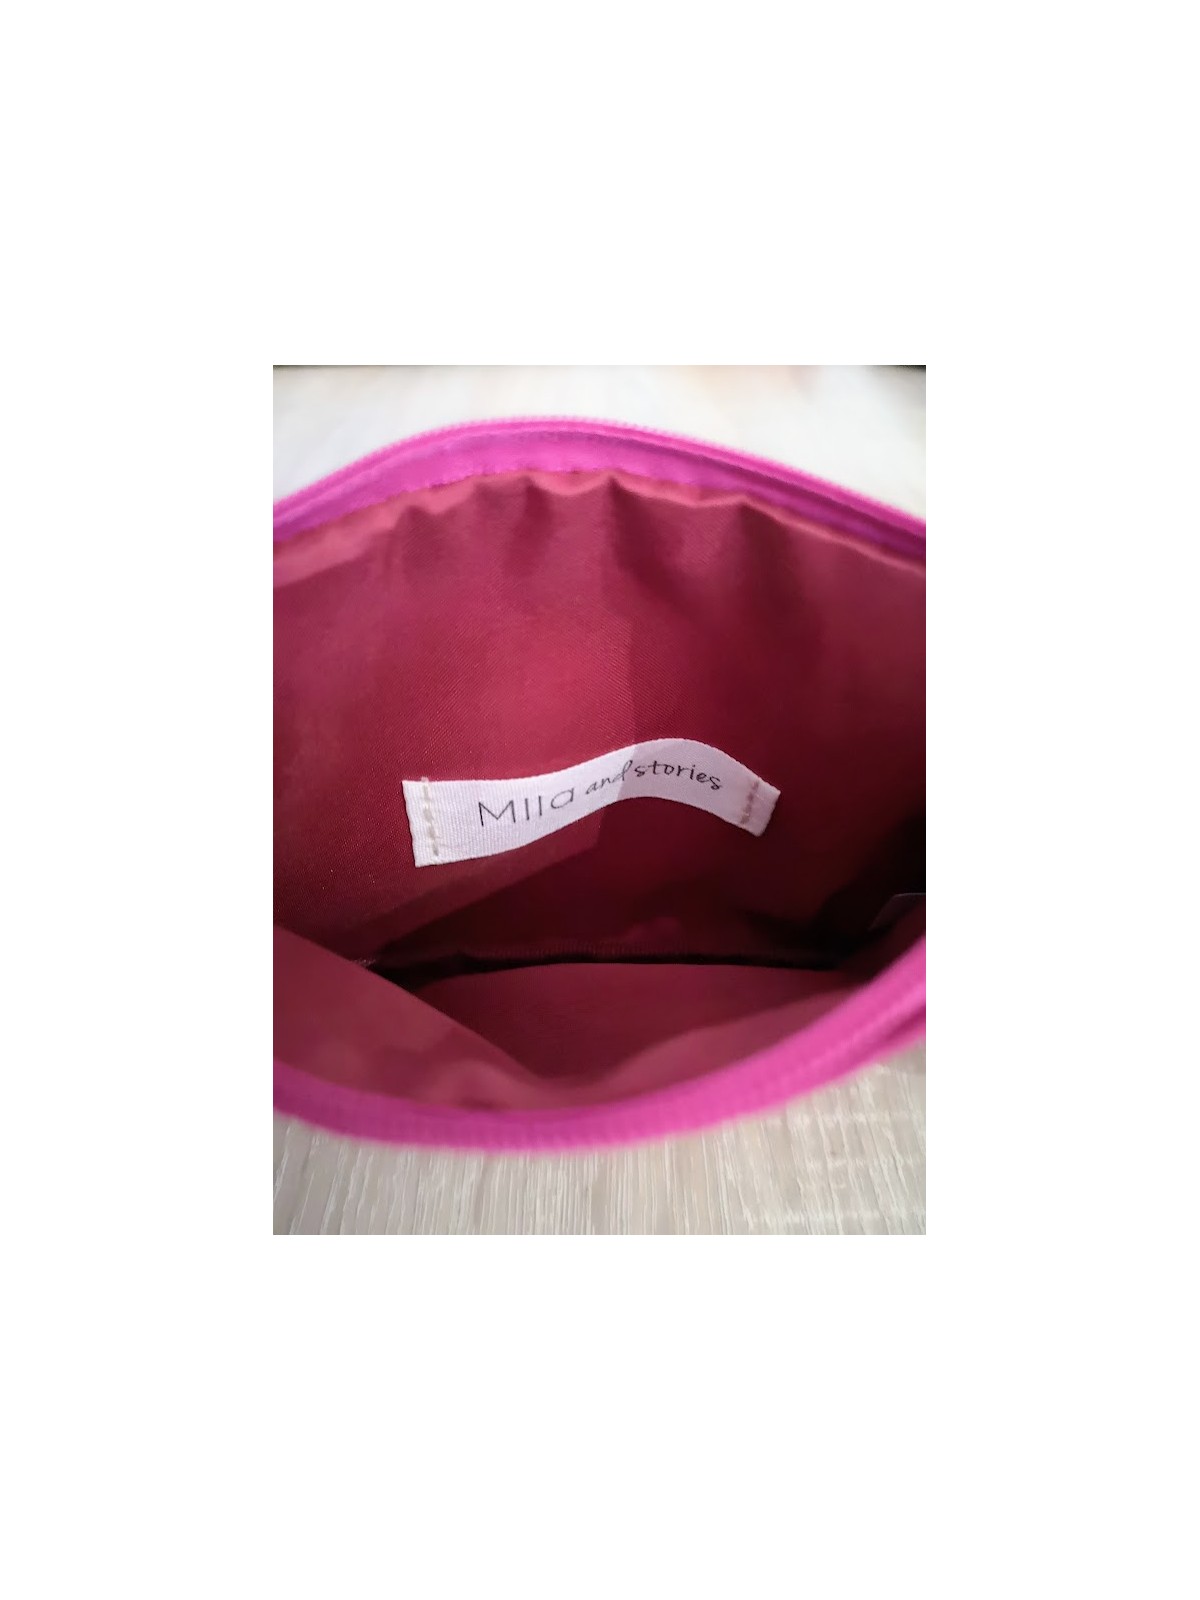 Pochette zippée rose et verte en tissu doublé l 2 vue interieur doublé l Tilleulmenthe mode boutique de vêtements en ligne